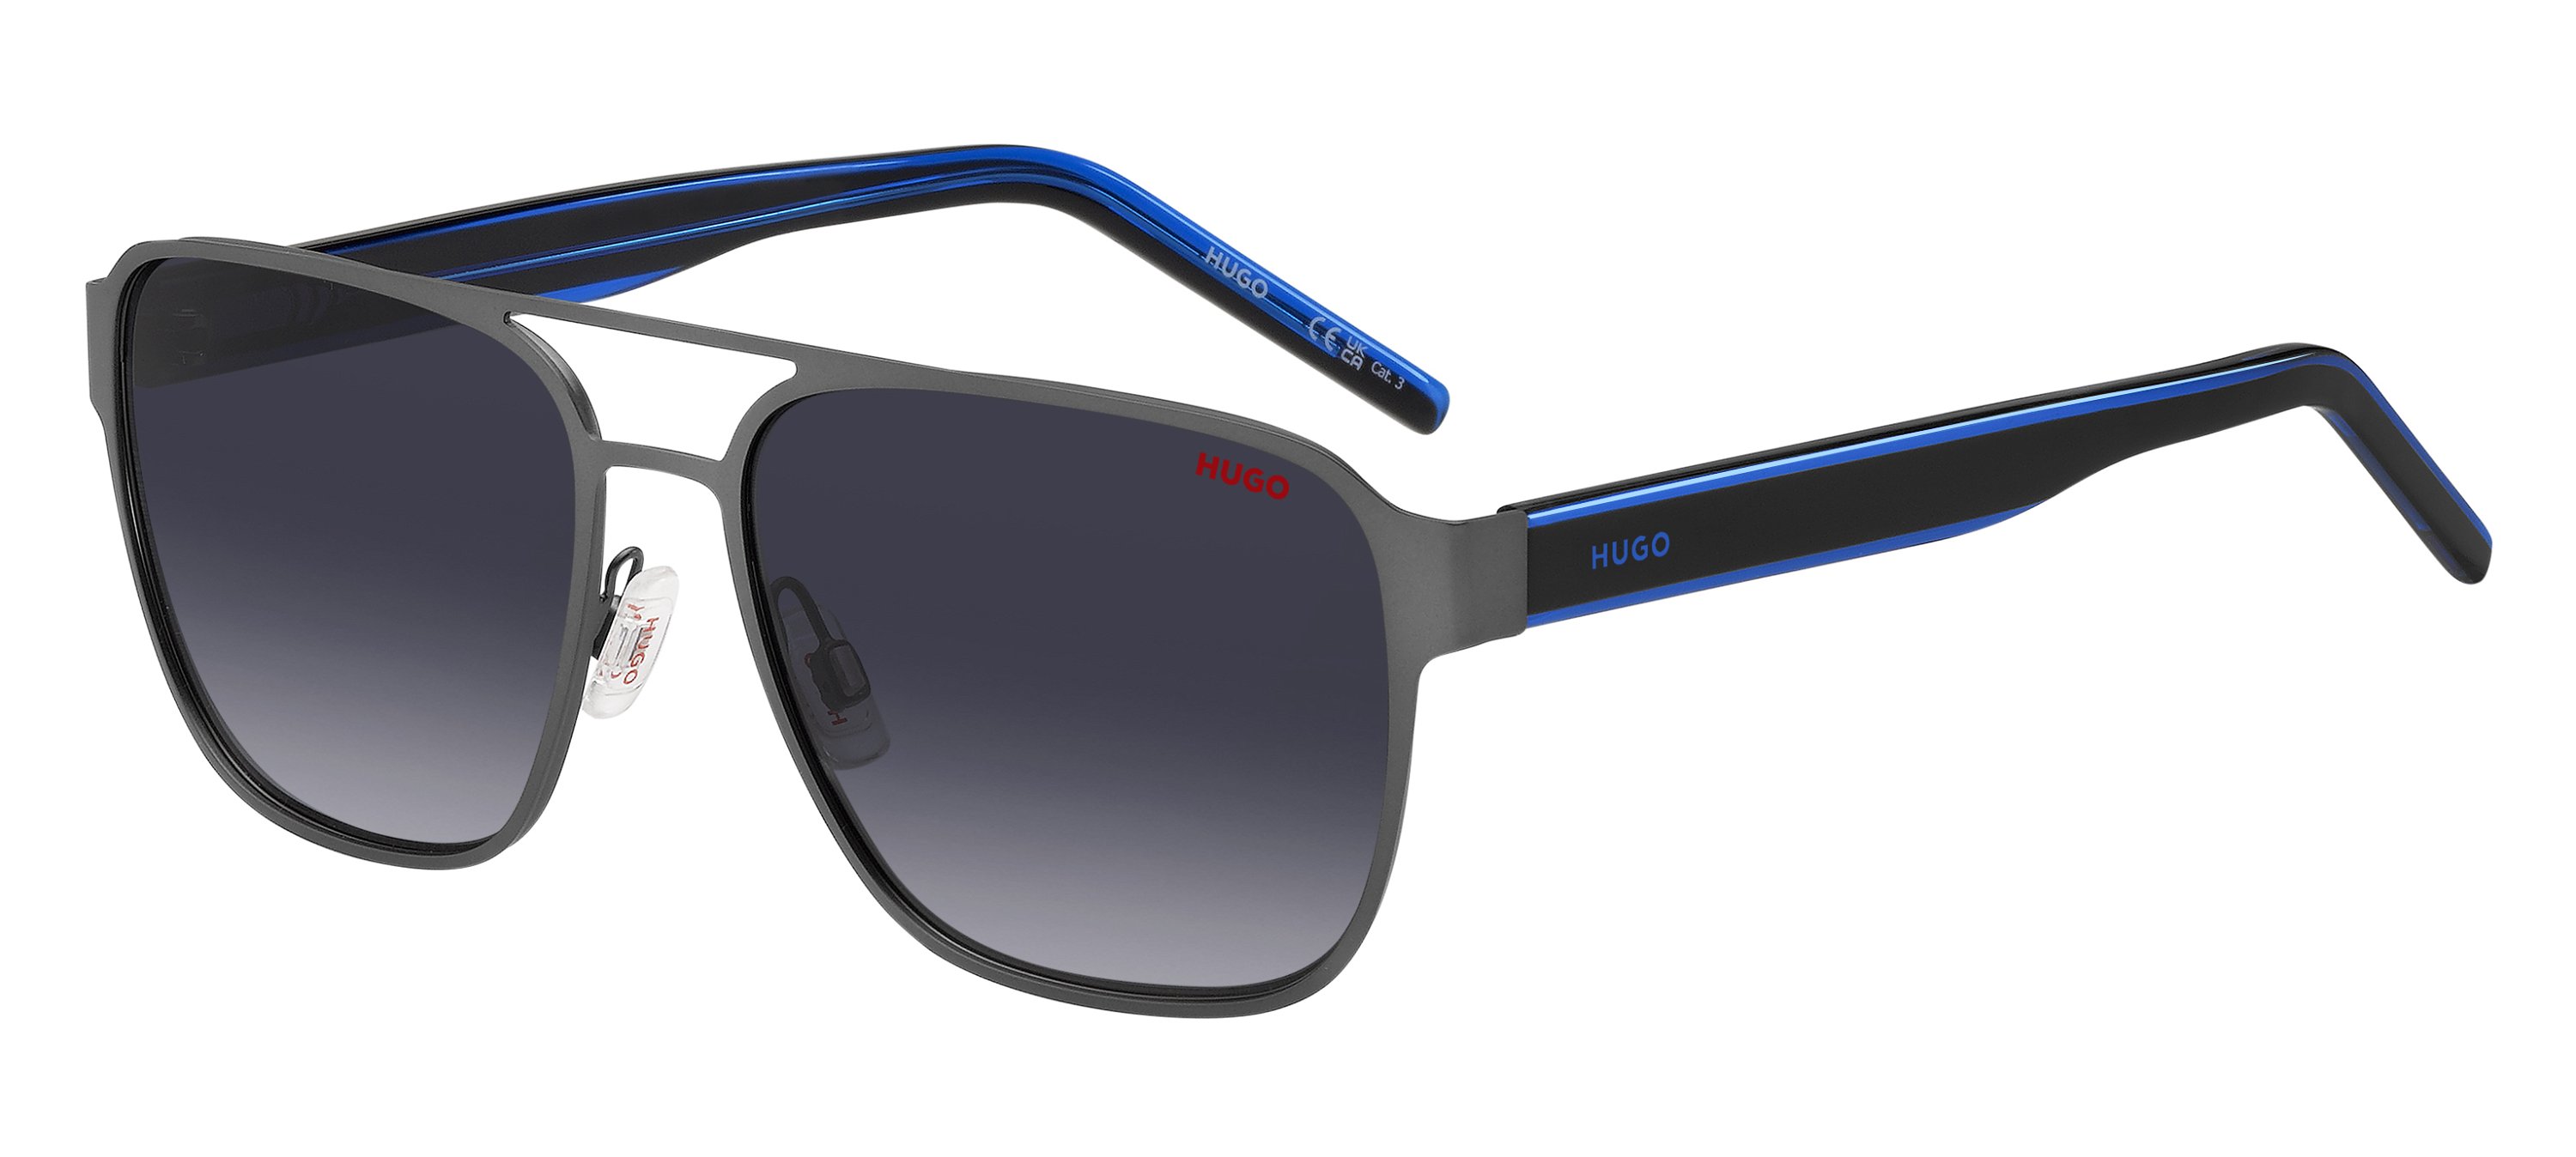 Das Bild zeigt die Sonnenbrille HG1298/S D51 von der Marke Hugo in blau/schwarz.